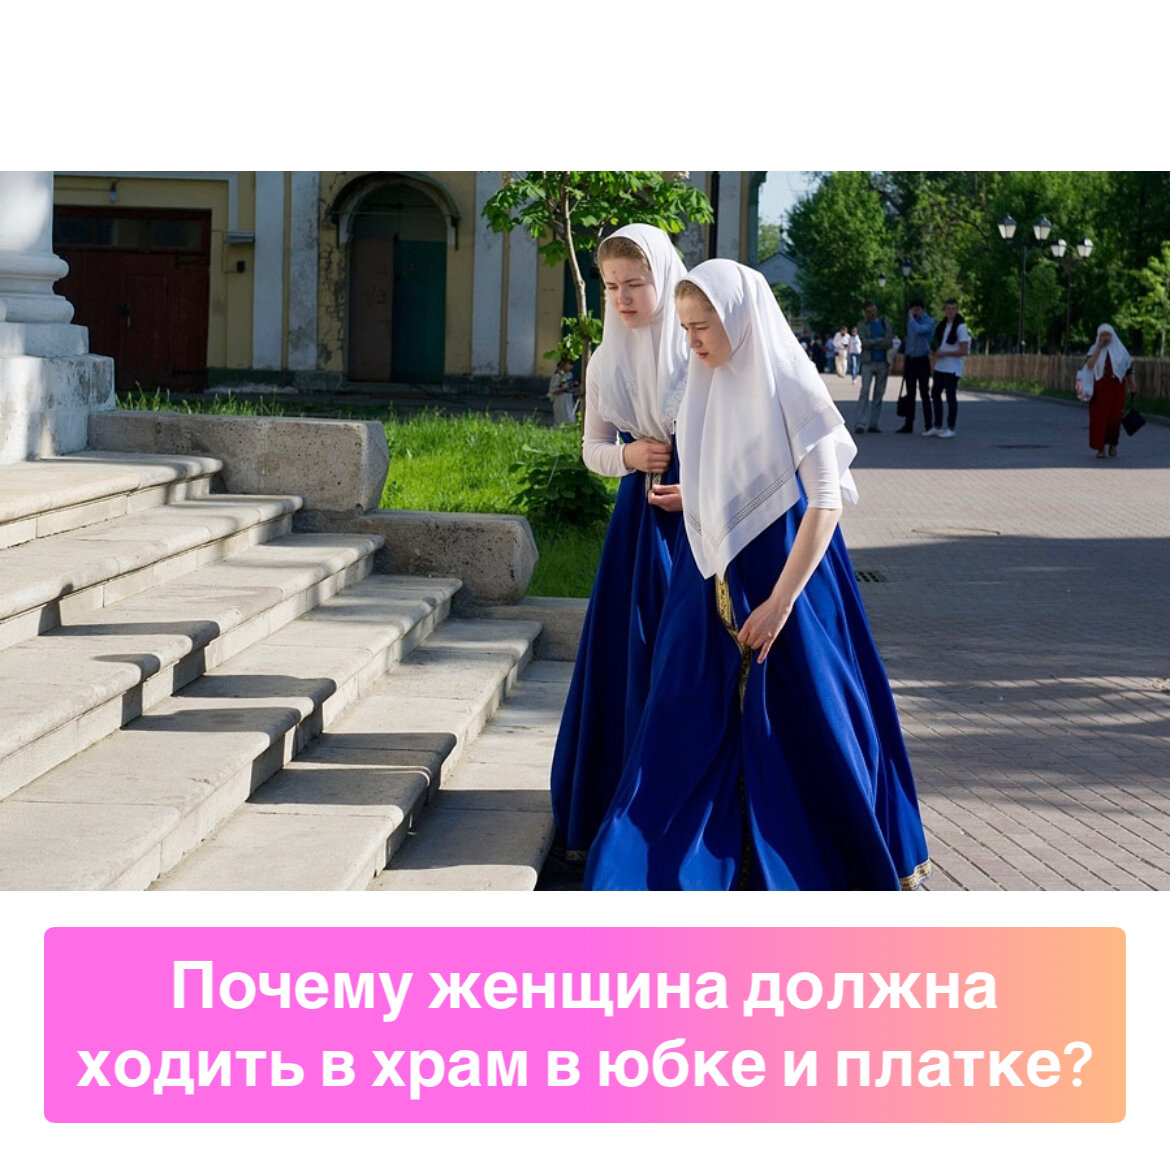 Почему с покрытой головой. Православная женщина. Одежда в храм. Платье женское для церкви. Православный наряд.